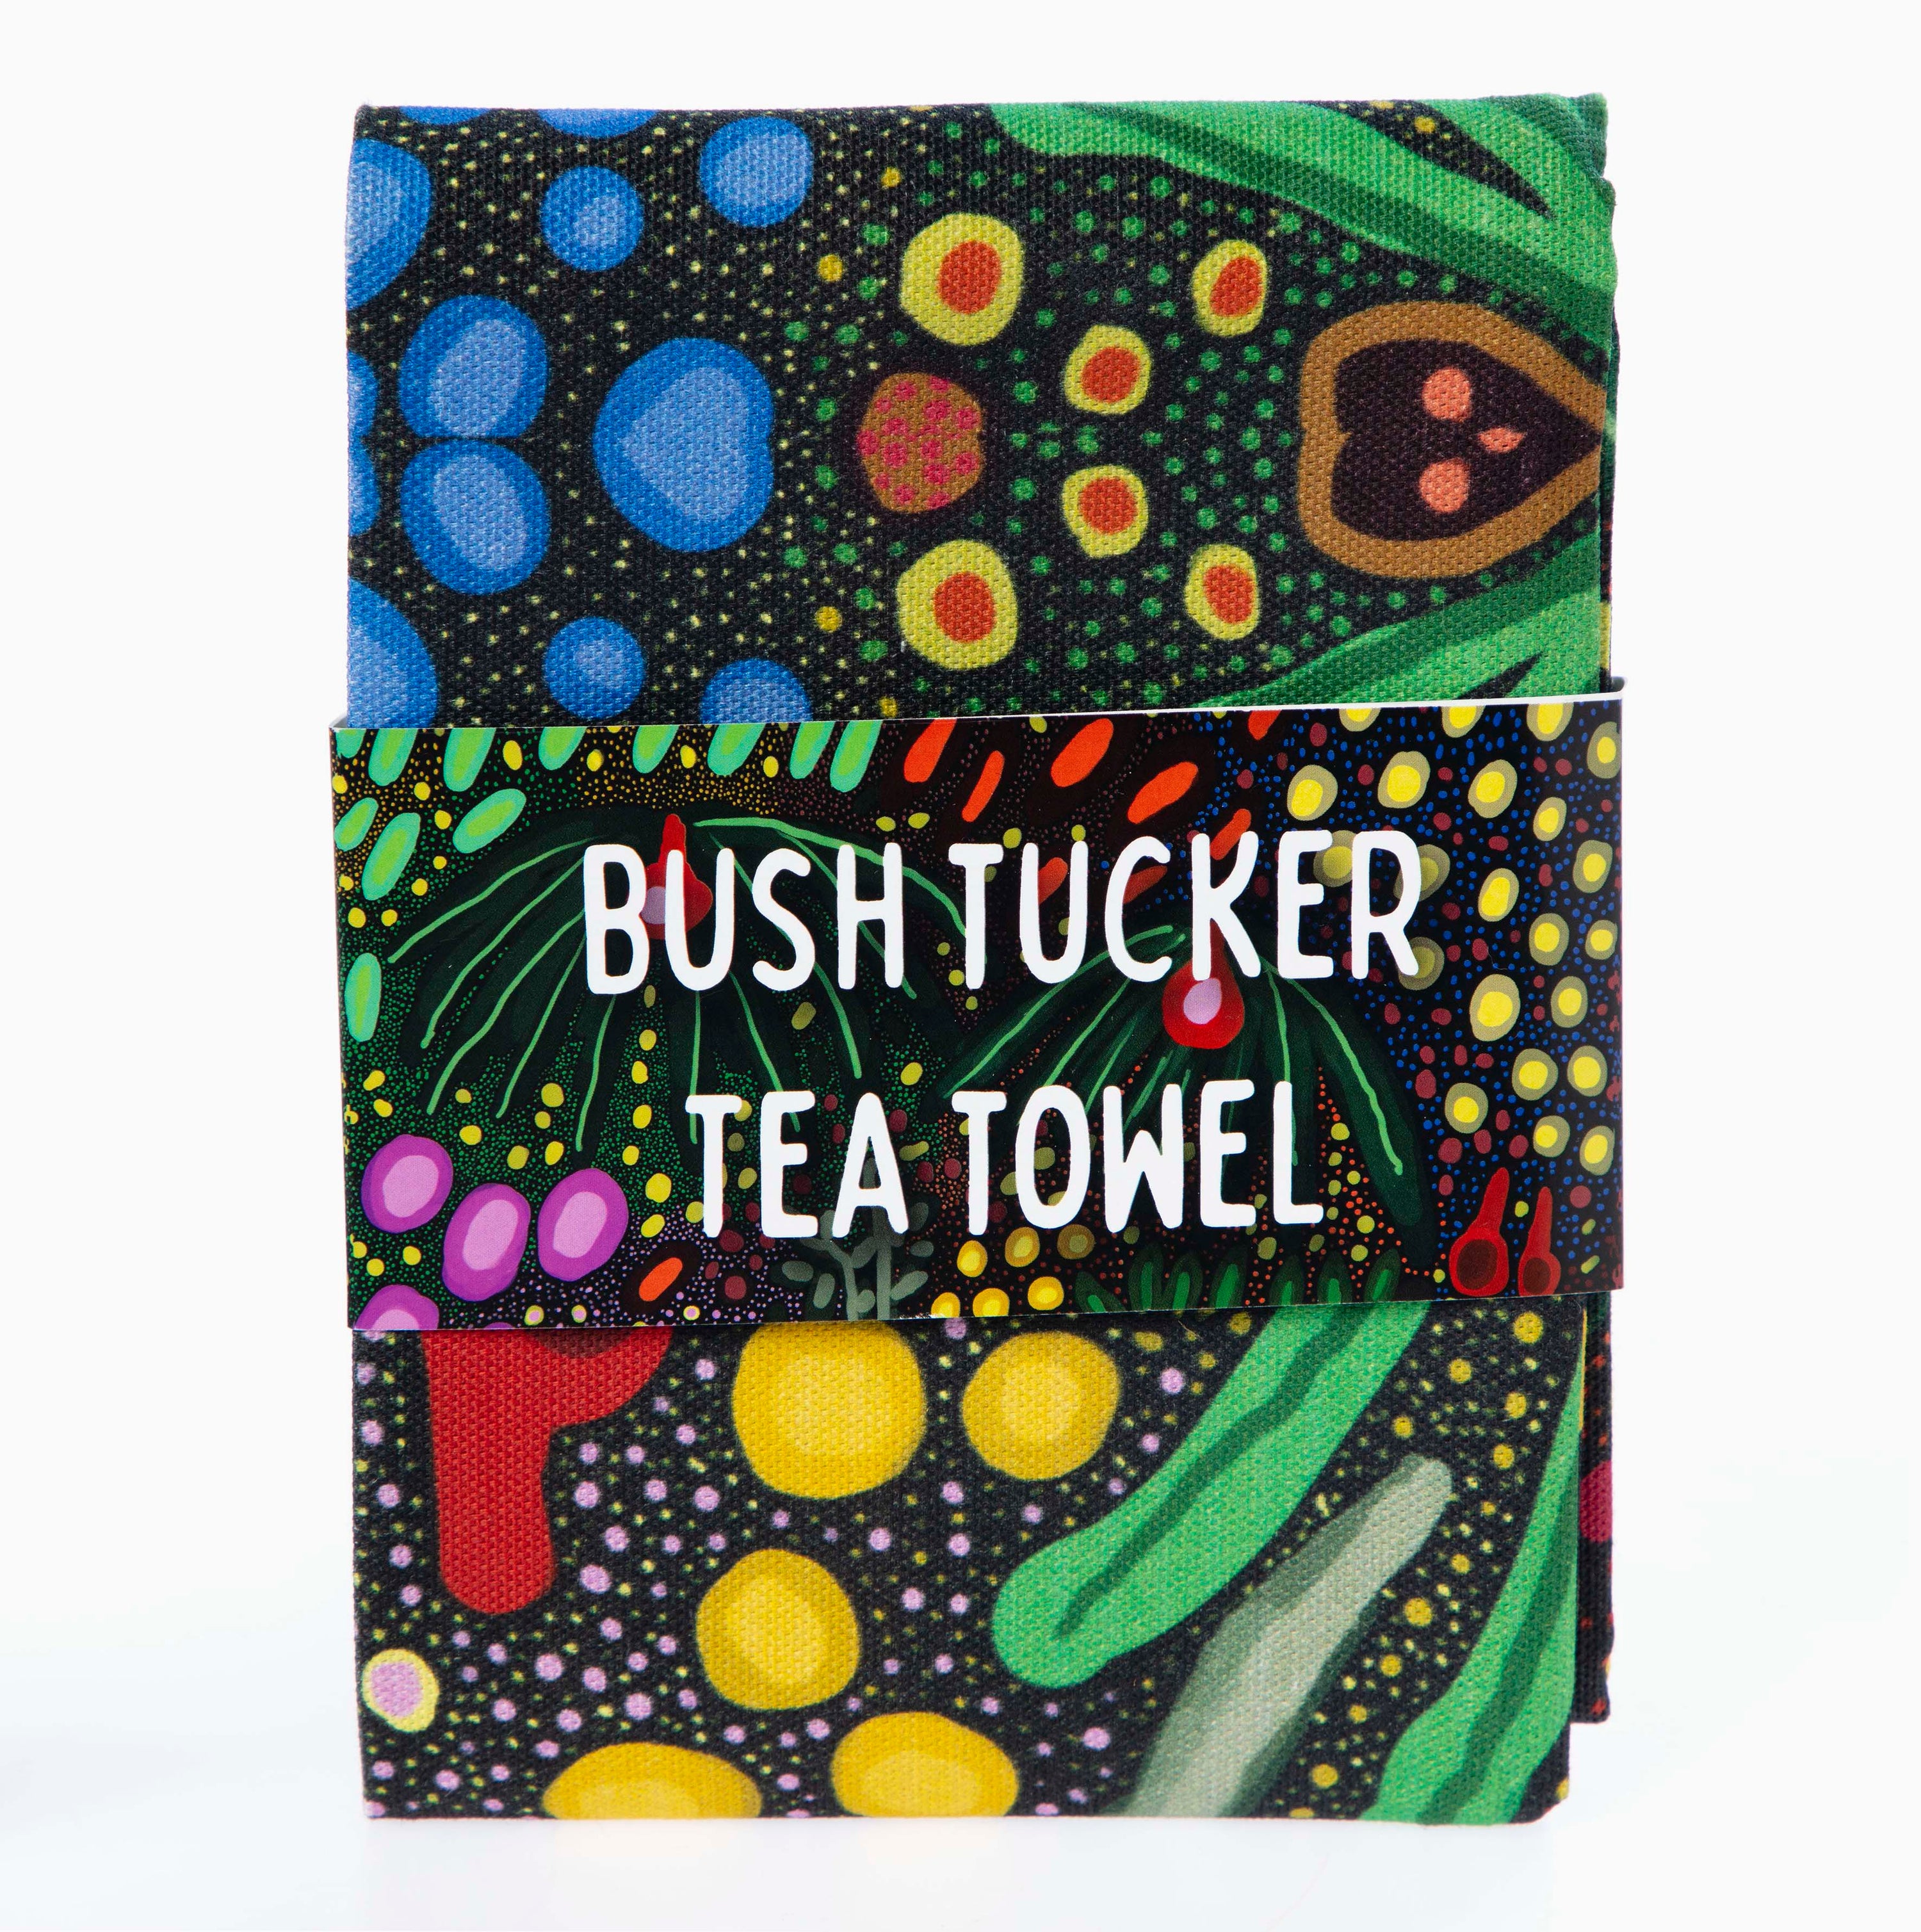 Bush Tucker Tea Towel